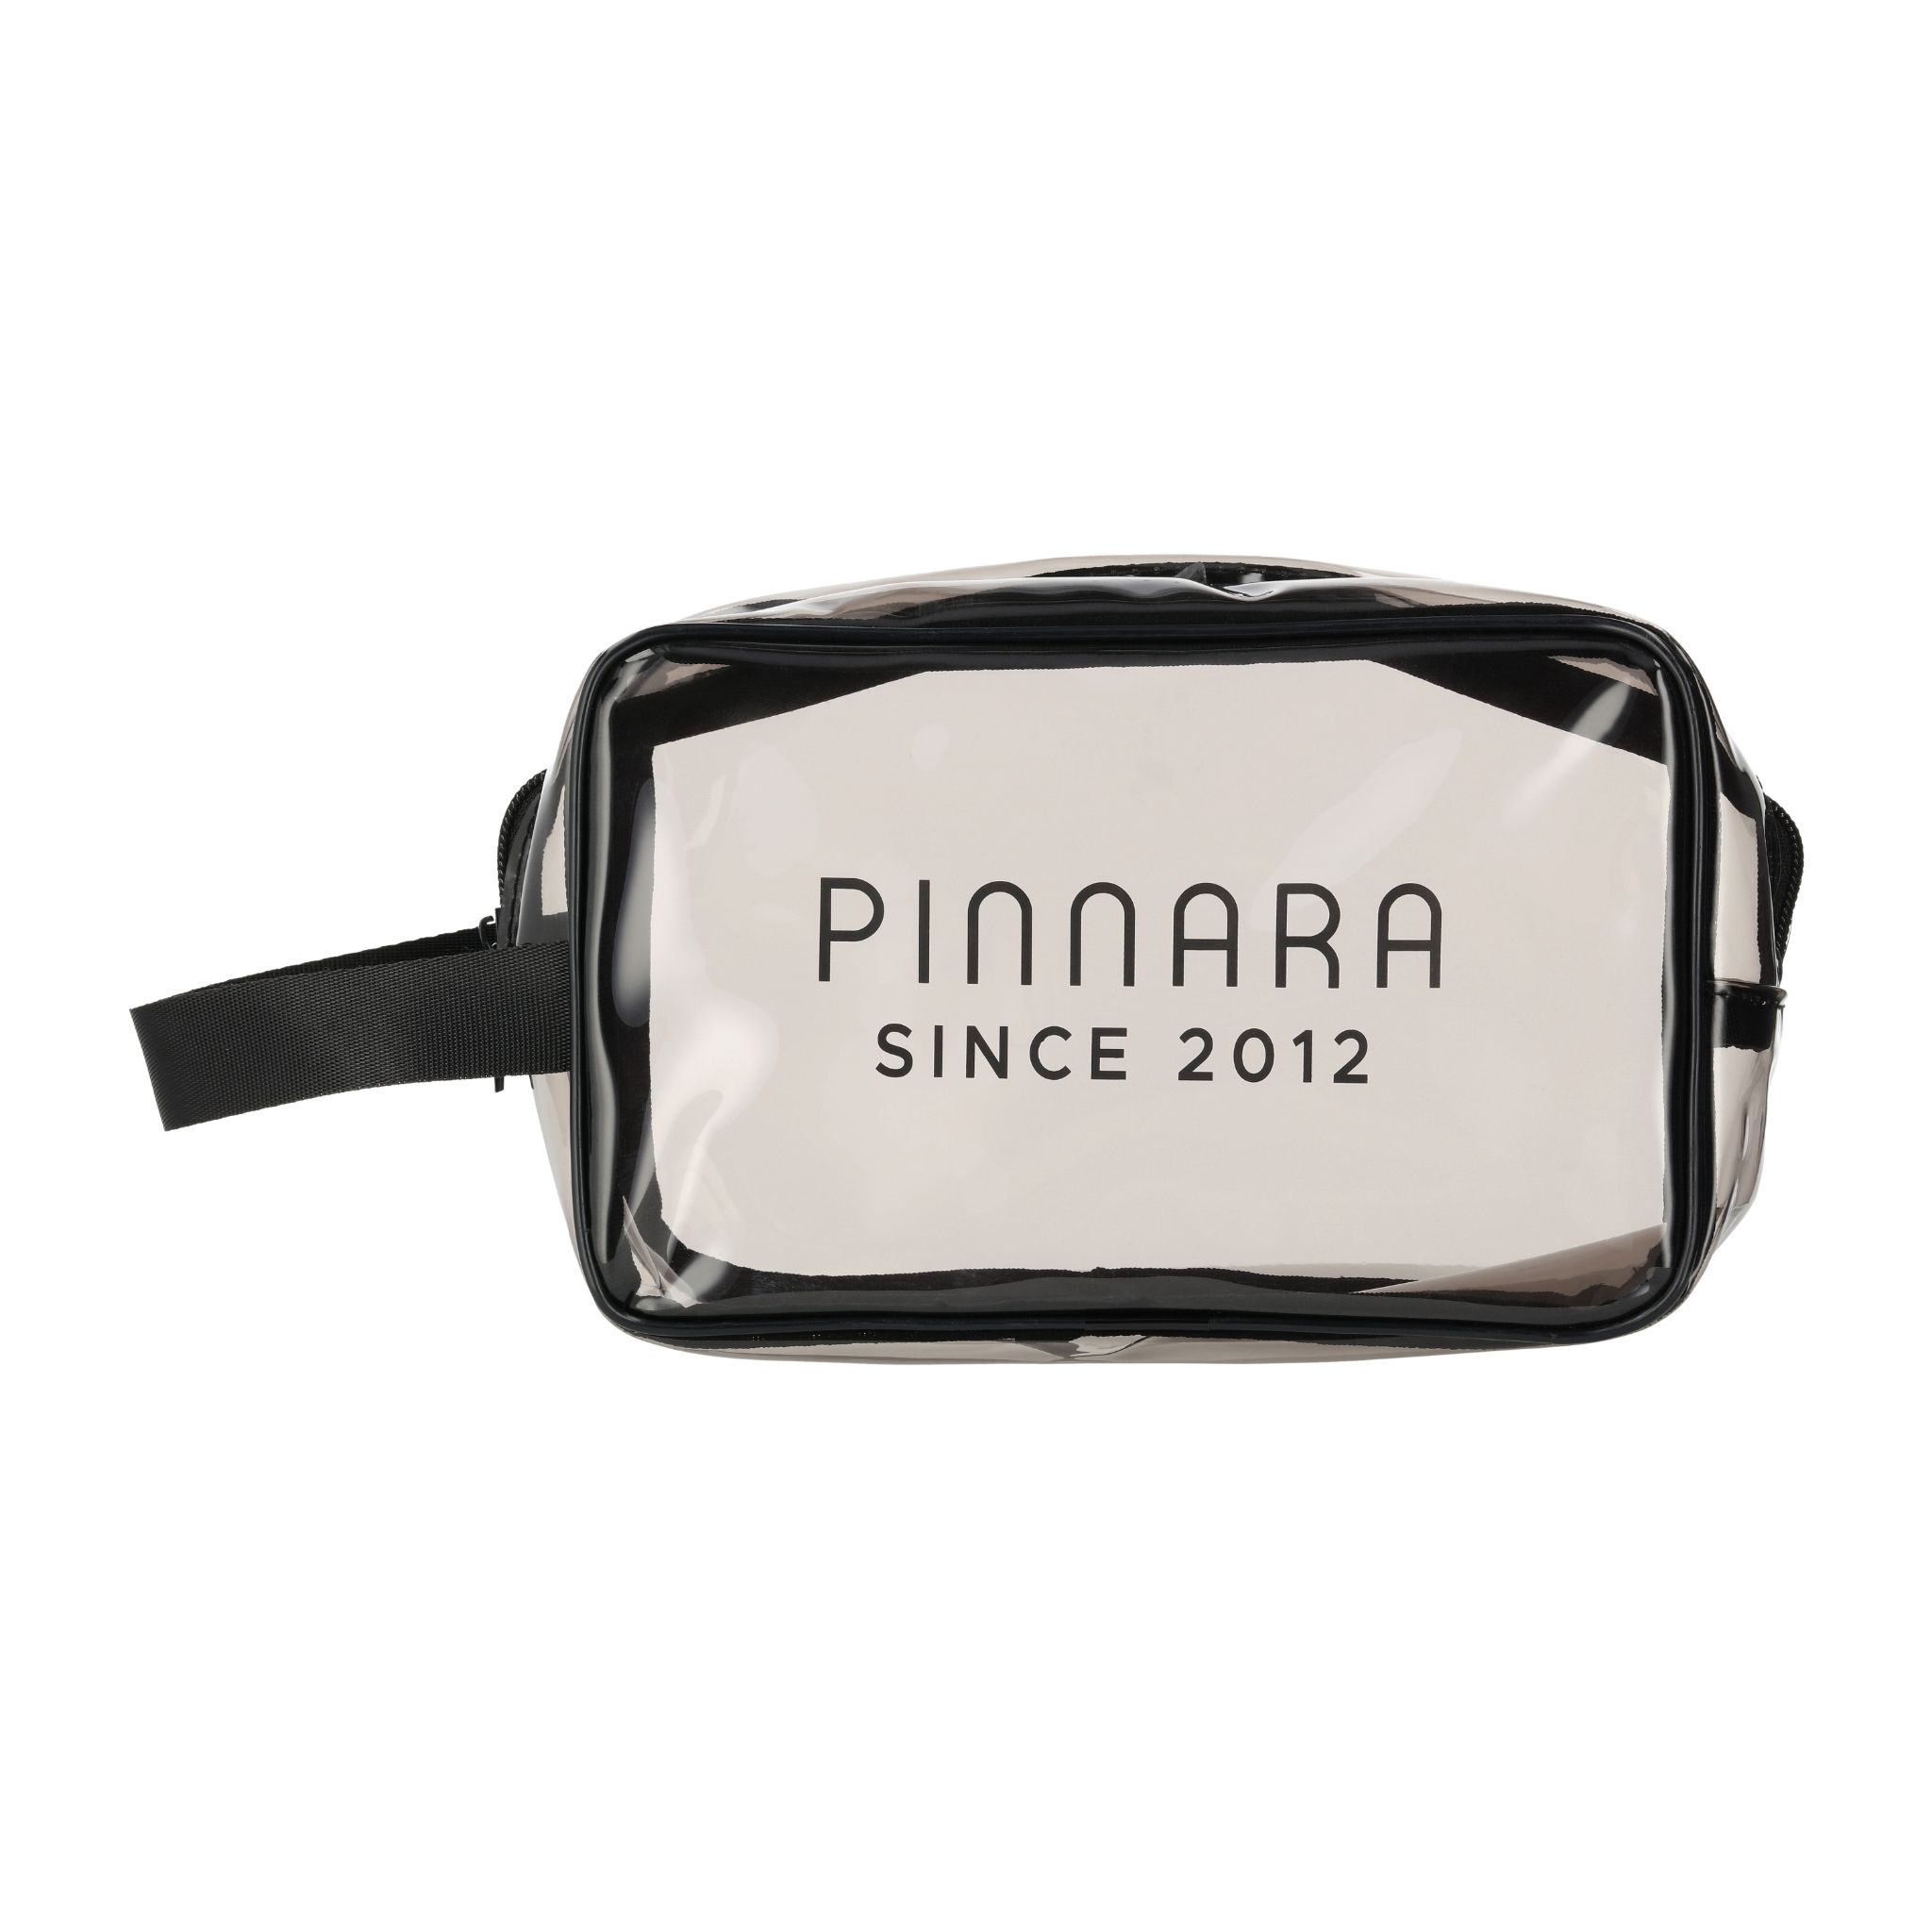 กระเป๋า Pinnara Travel Bag